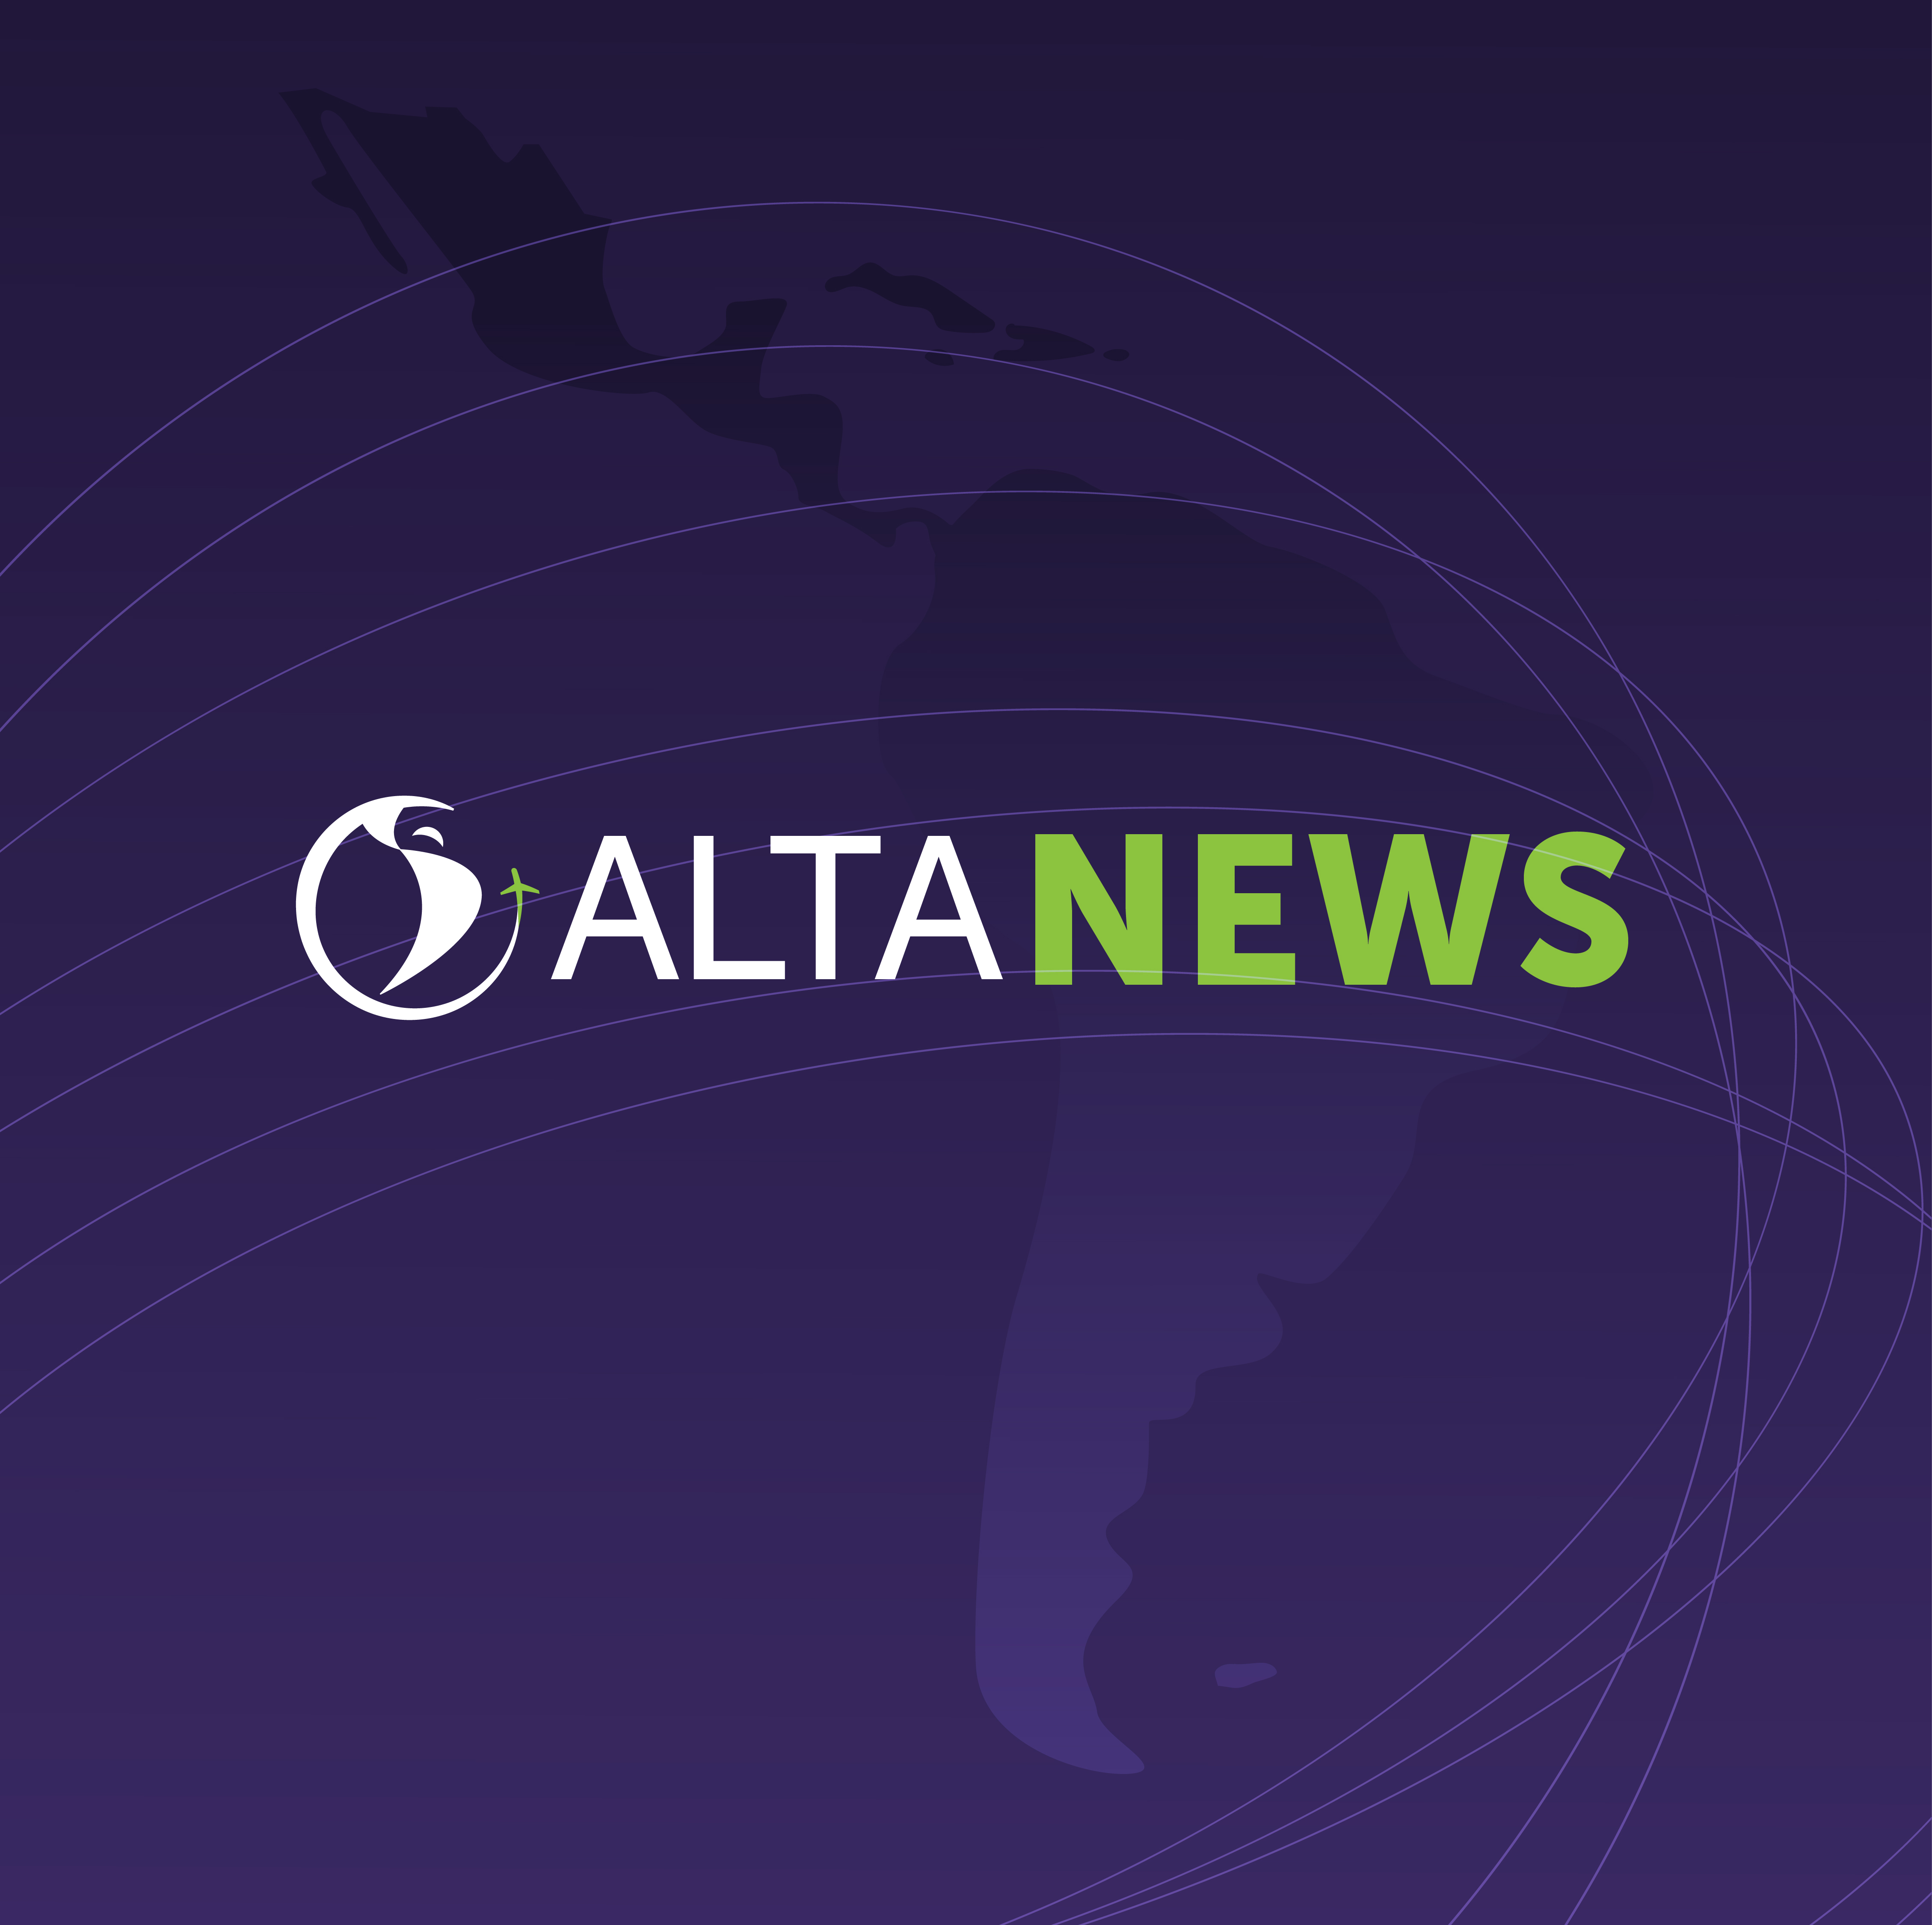 ALTA NEWS - Las restricciones de visado para los tripulantes puede perjudicar a la economía y la sociedad brasileñas